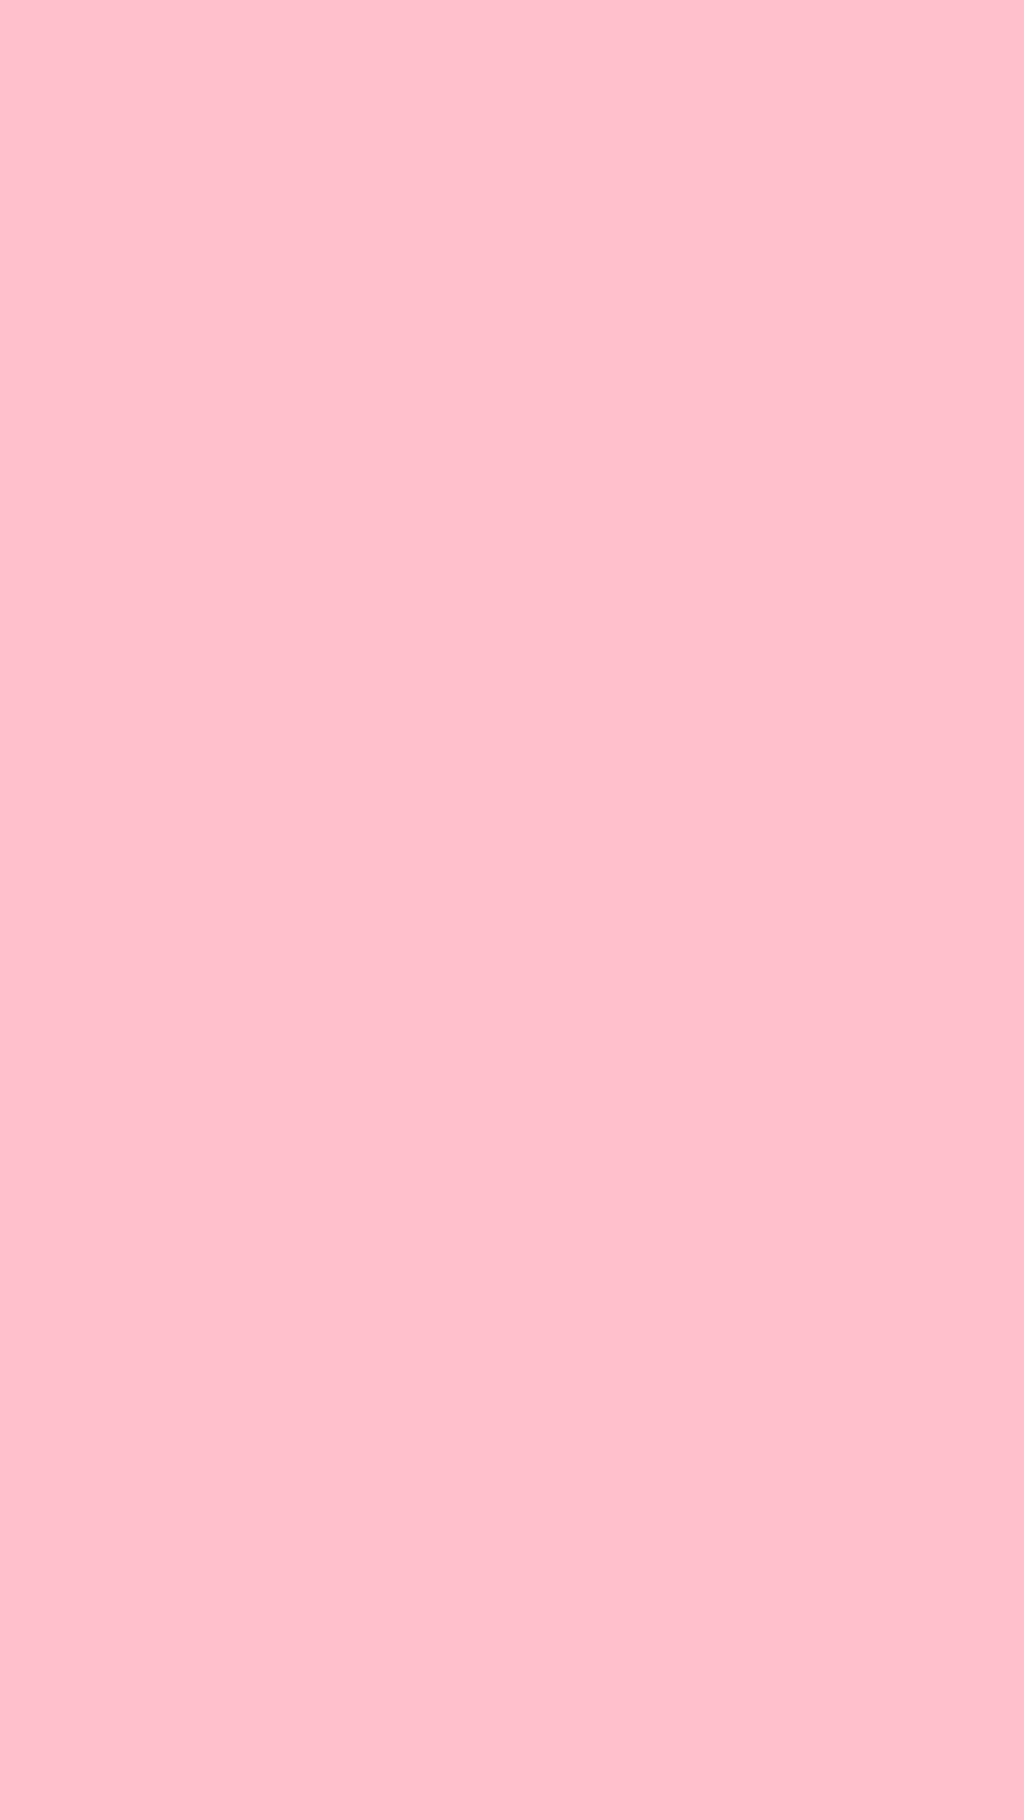 Màu hồng là sắc màu đầy nữ tính và dịu dàng, được ưa thích bởi nhiều bạn gái. Nếu bạn là một trong những fan của màu hồng, hãy khám phá ngay những ảnh nền đẹp và dễ thương có tông màu hồng trên trang web của chúng tôi. Hãy truy cập và cảm nhận sự thú vị từ những bức ảnh này.